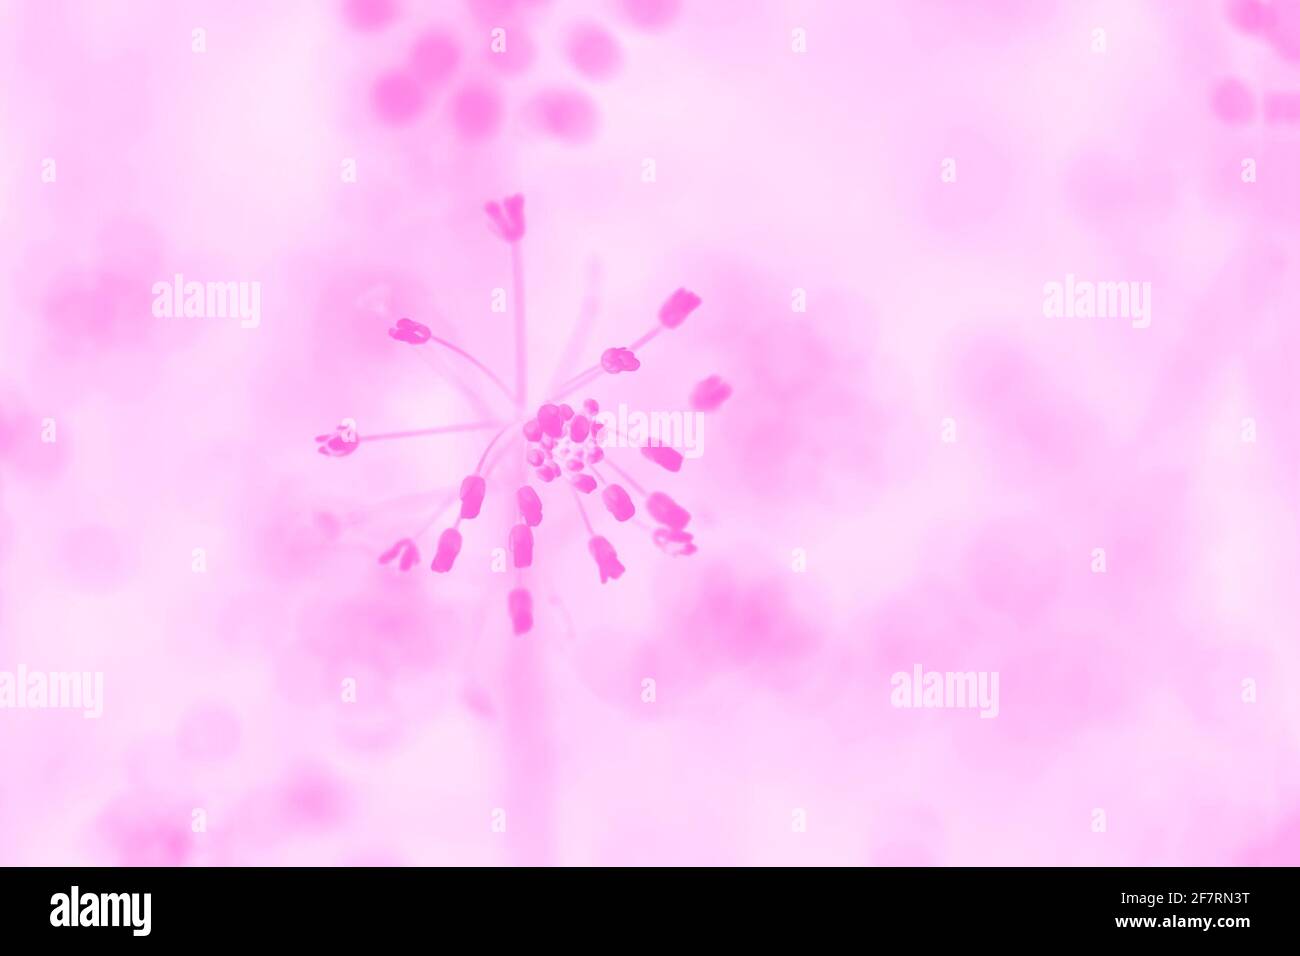 Colore fucsia rosa chiaro sfondo pastello con motivi floreali Foto Stock